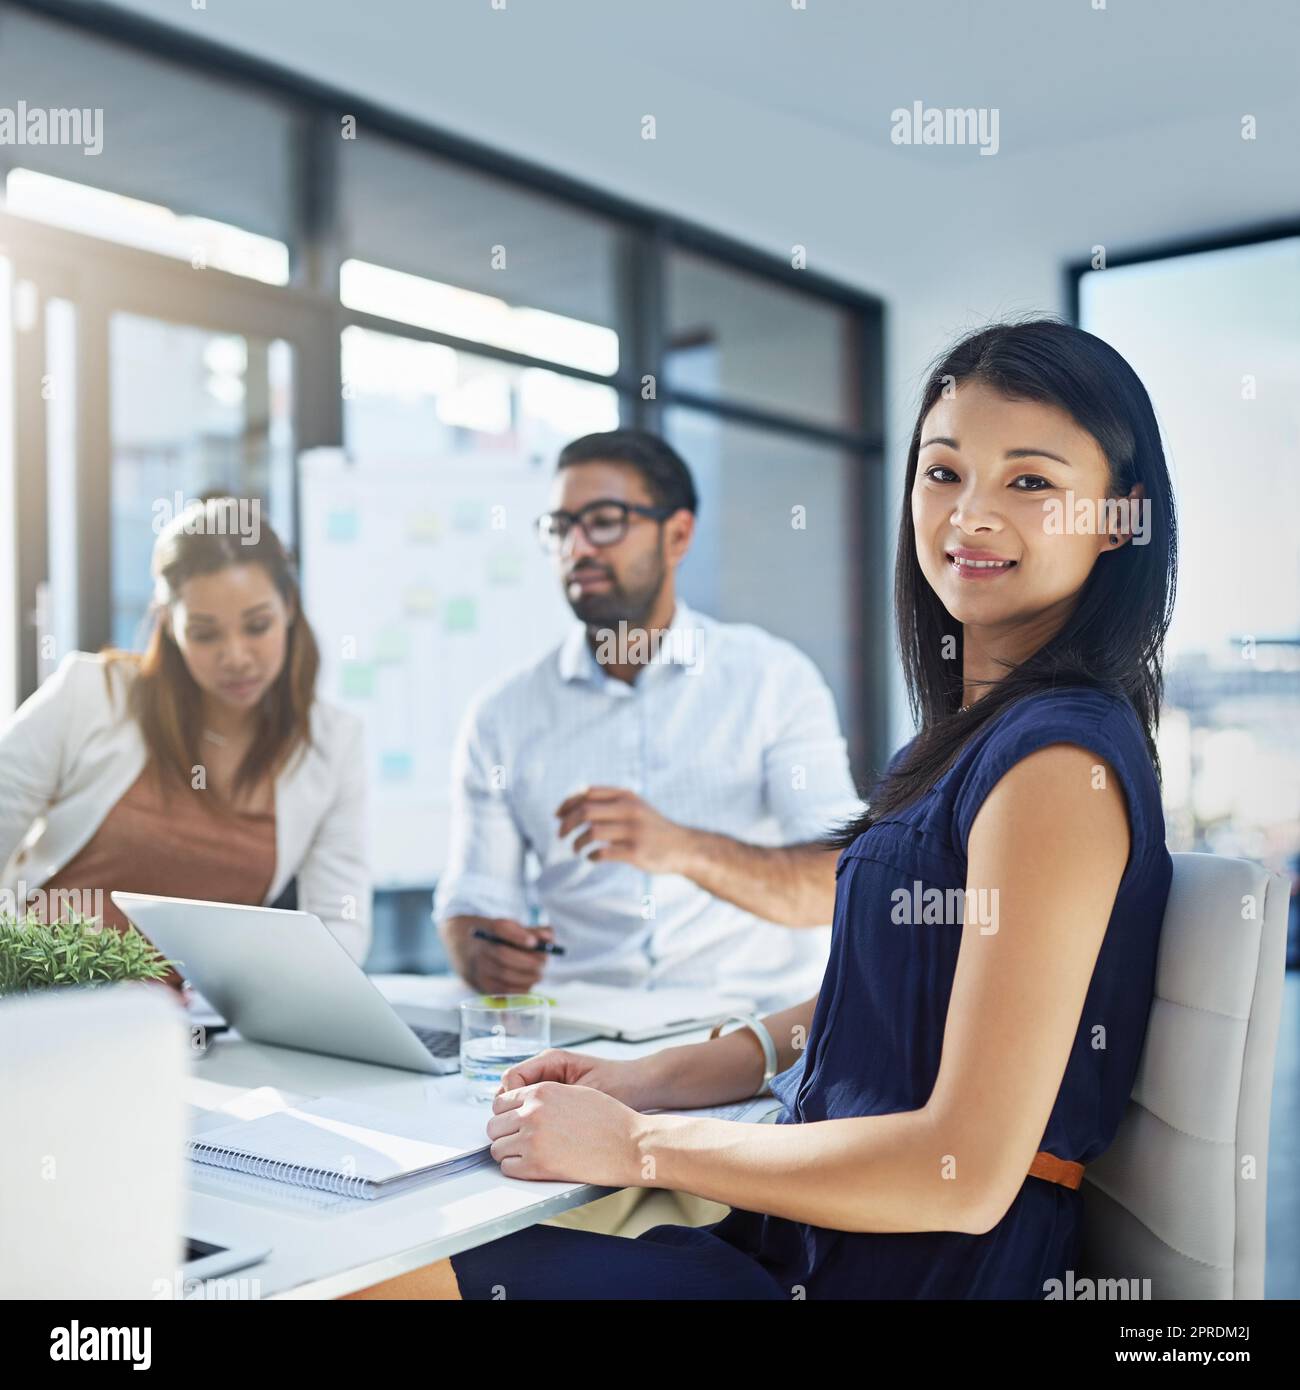 Wir bieten den besten Service der Branche. Porträt einer attraktiven jungen Geschäftsfrau, die in ihrem Büro sitzt, während ihre Kollegen im Hintergrund eine Diskussion führen. Stockfoto